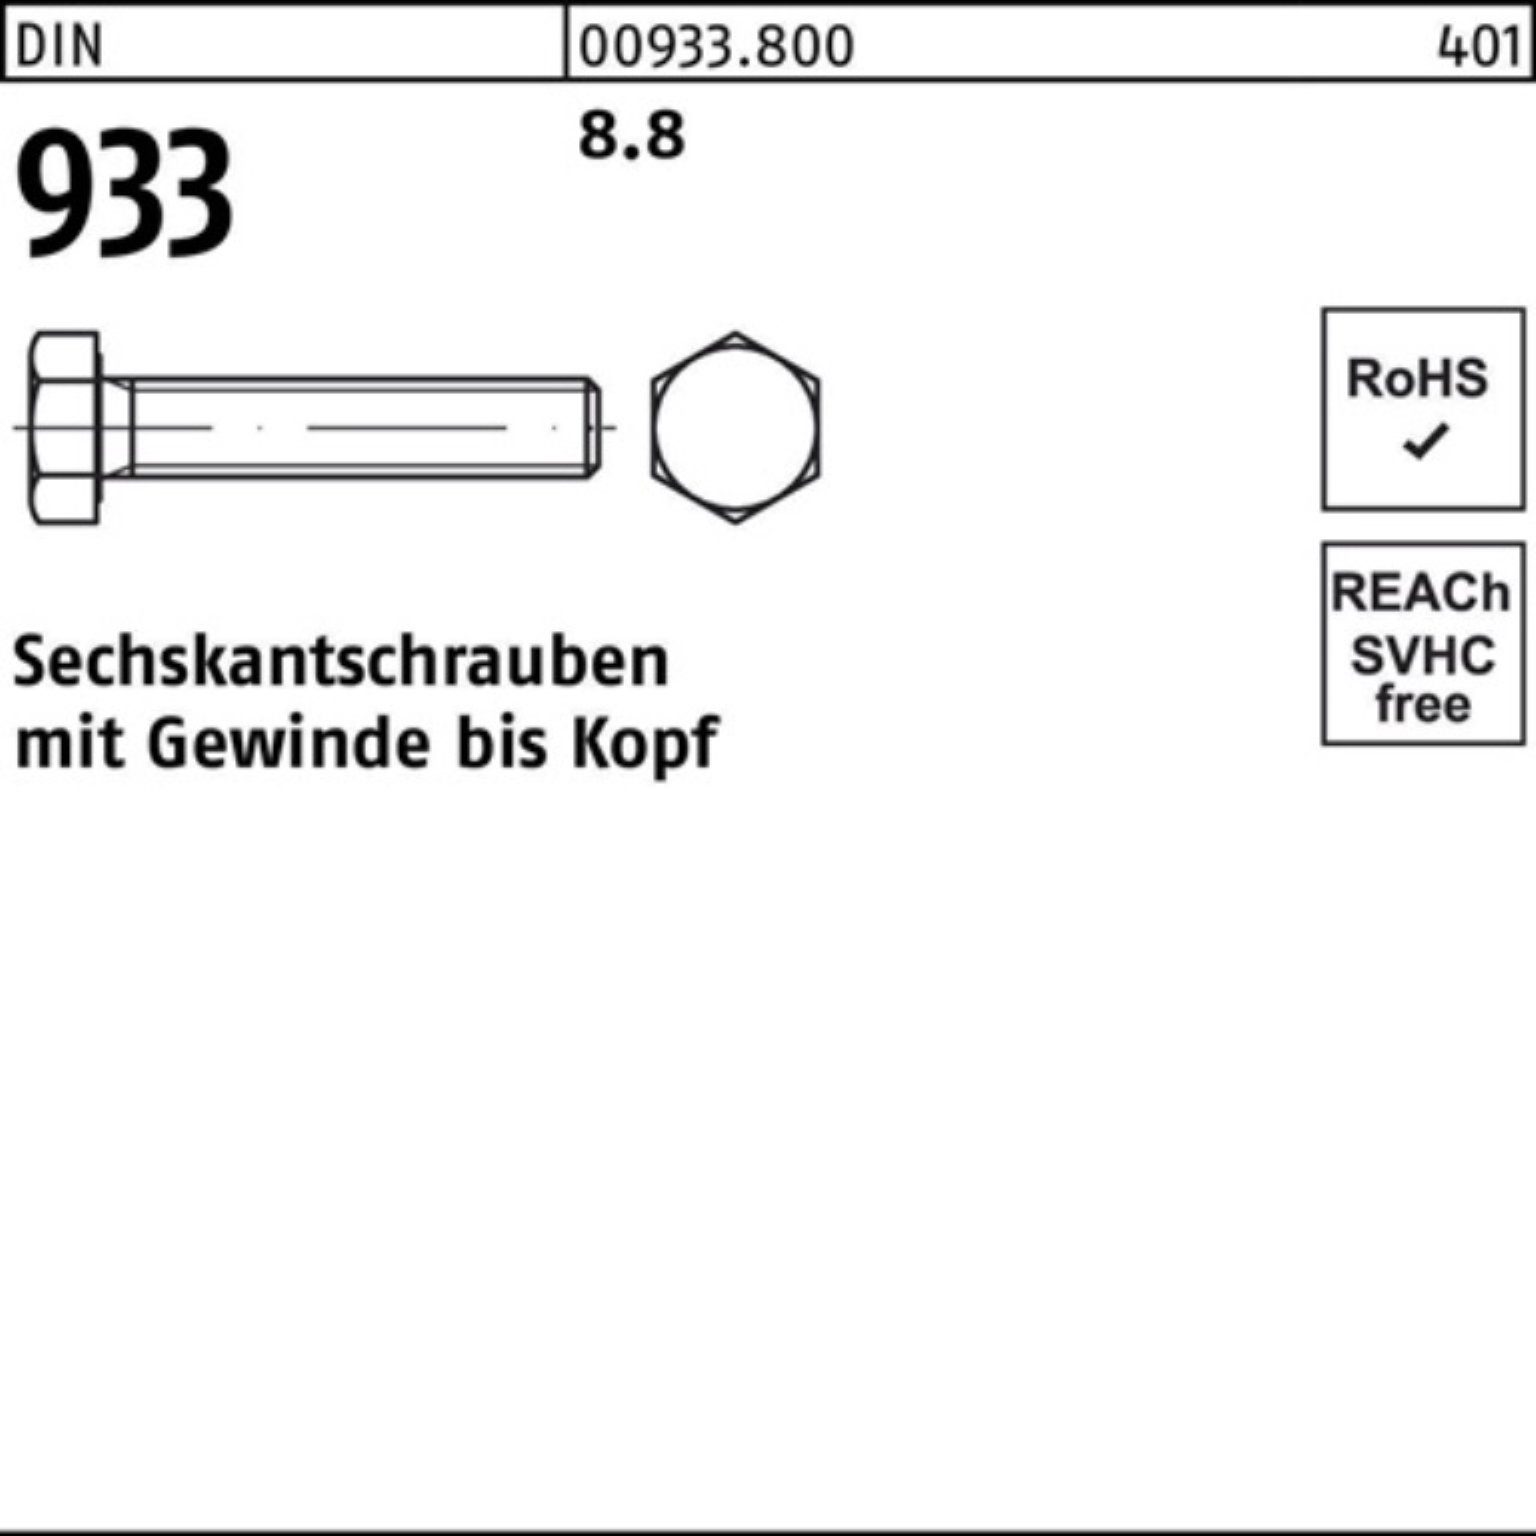 M4x 500er 933 Reyher Pack 8.8 DIN VG Stück 500 20 Sechskantschraube 933 DIN Sechskantschraube